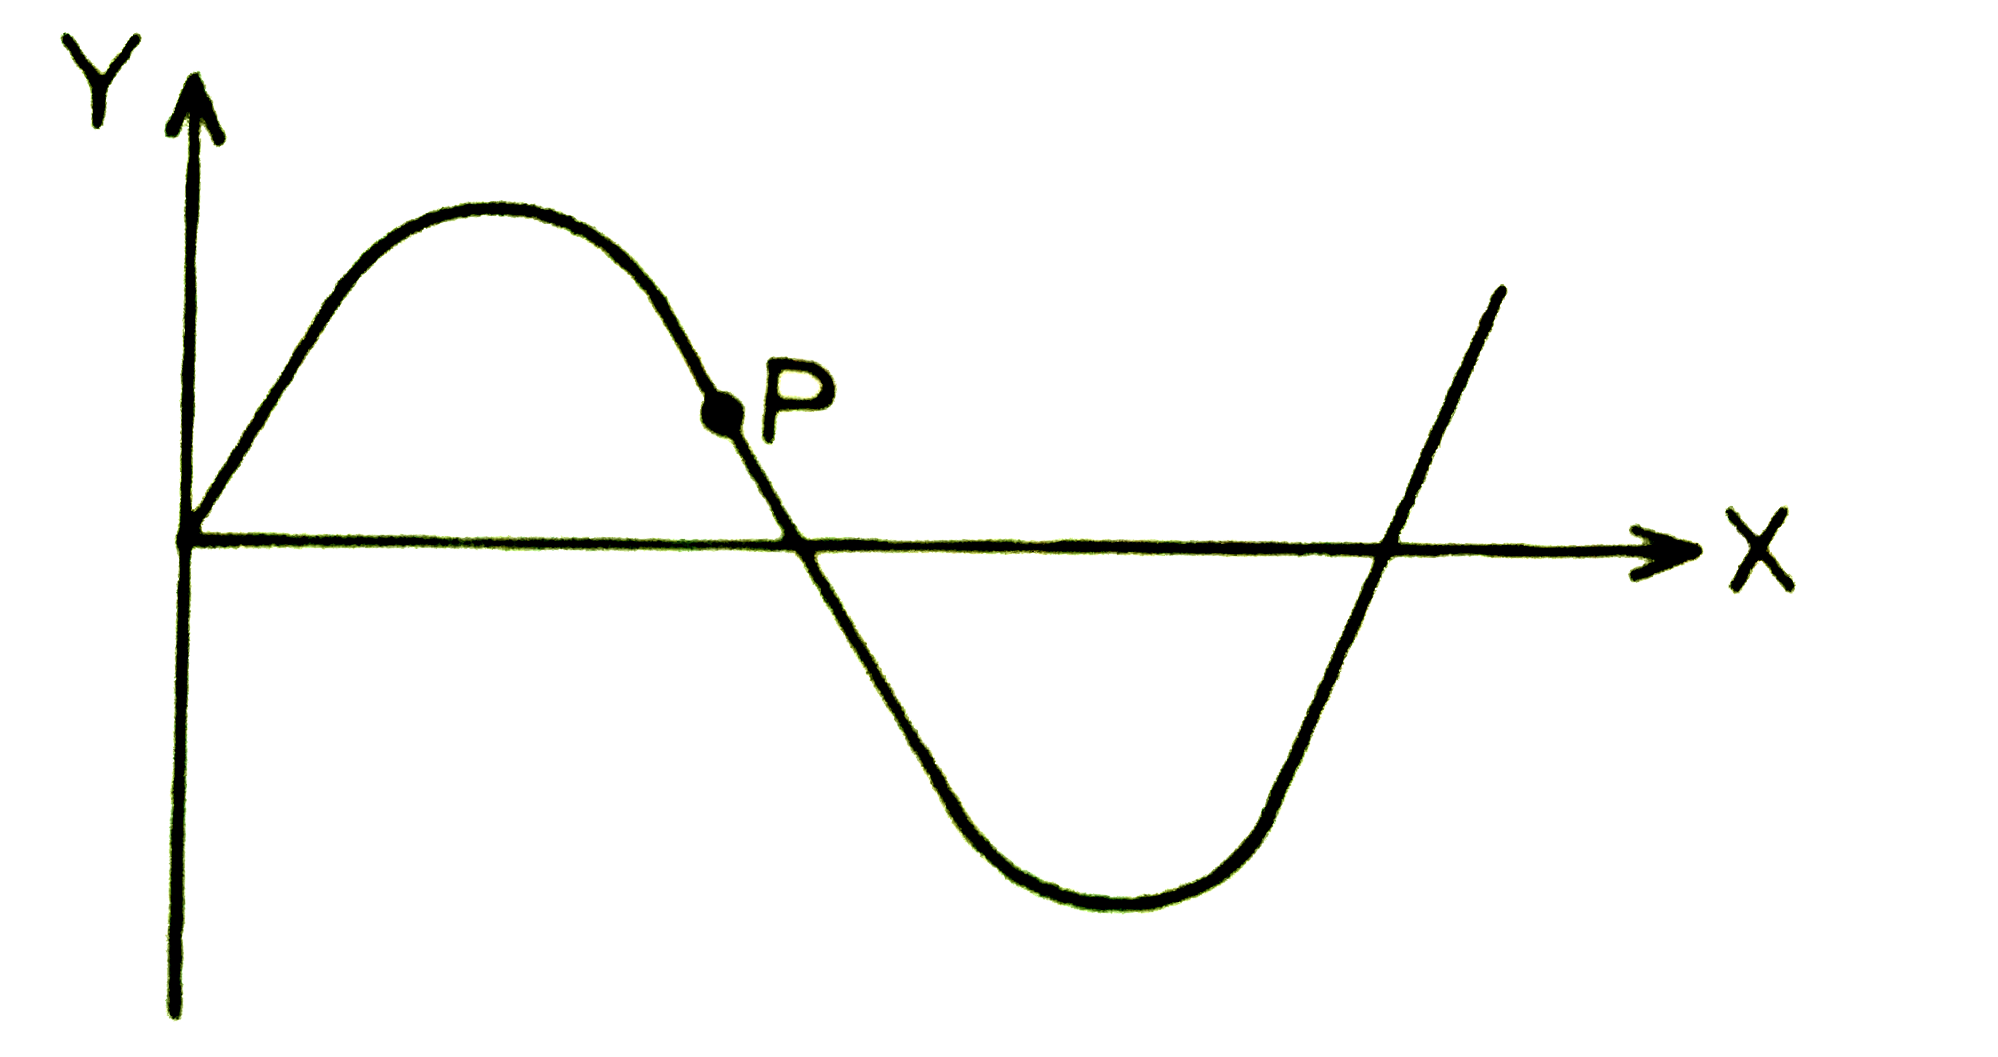 एक अनुप्रस्थ ज्यावक्रीया तरंग एक डोरी में 10 सेमी/सेकण्ड की गति से X - अक्ष की और चली है । इसकी तरंगदैघ्र्य 0.5  मीटर तथा आयाम 10 सेमी है एक विशेष समय t पर, तरंग का अशुचित्र (snap - shot ) चित्र में दिशाय गया है बिंदु P का विस्थापन 5 सेमी होने पर उसका वेग है :